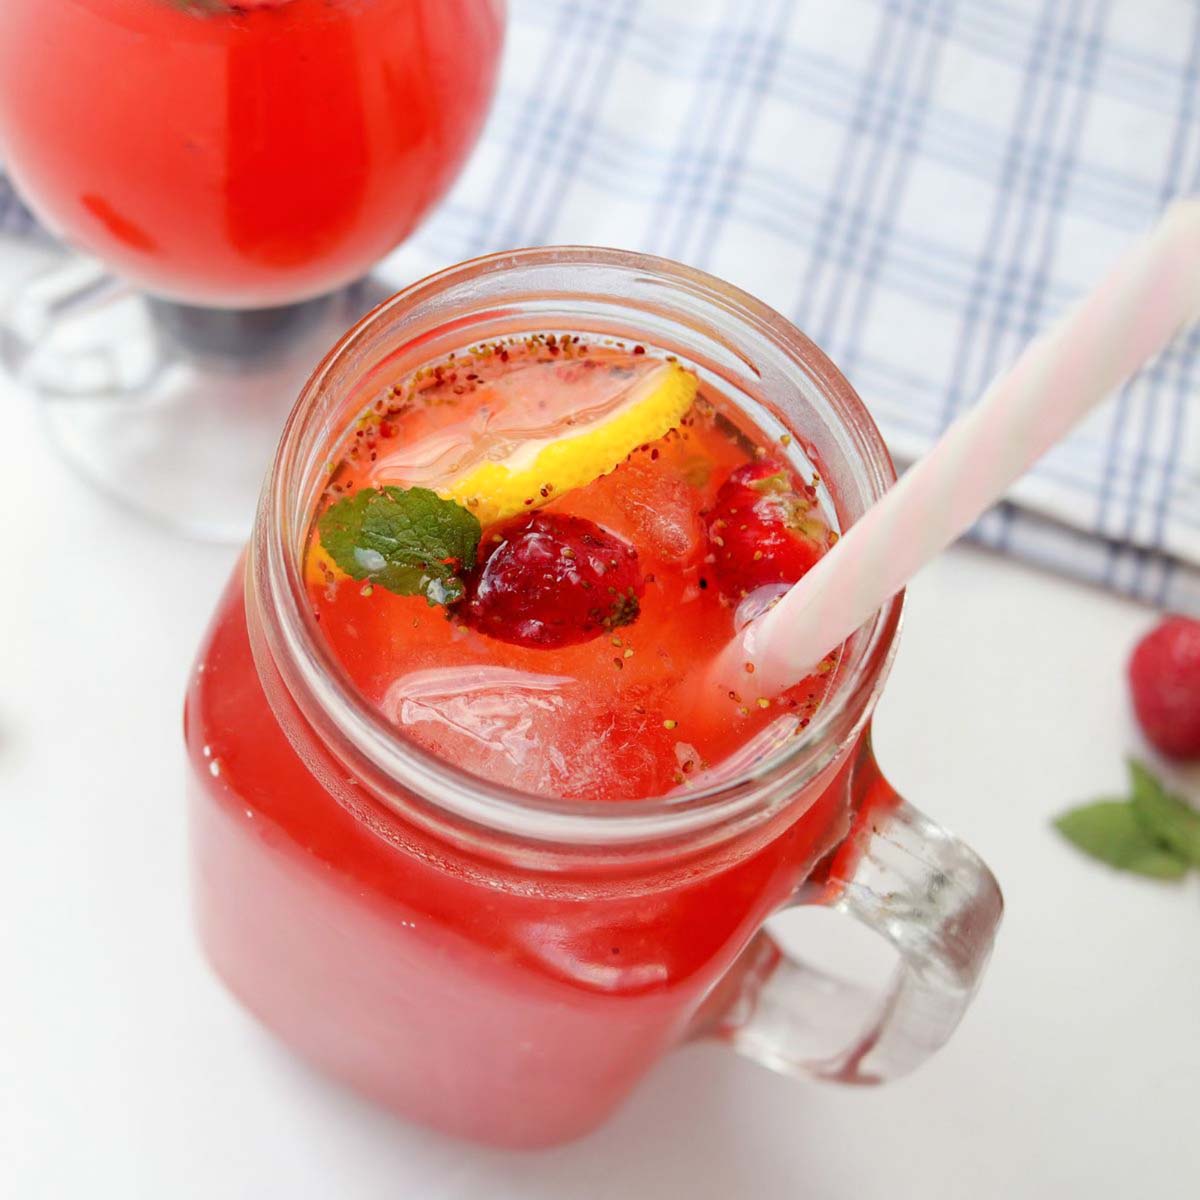 Thumbnail of green tea strawberry lemonade.